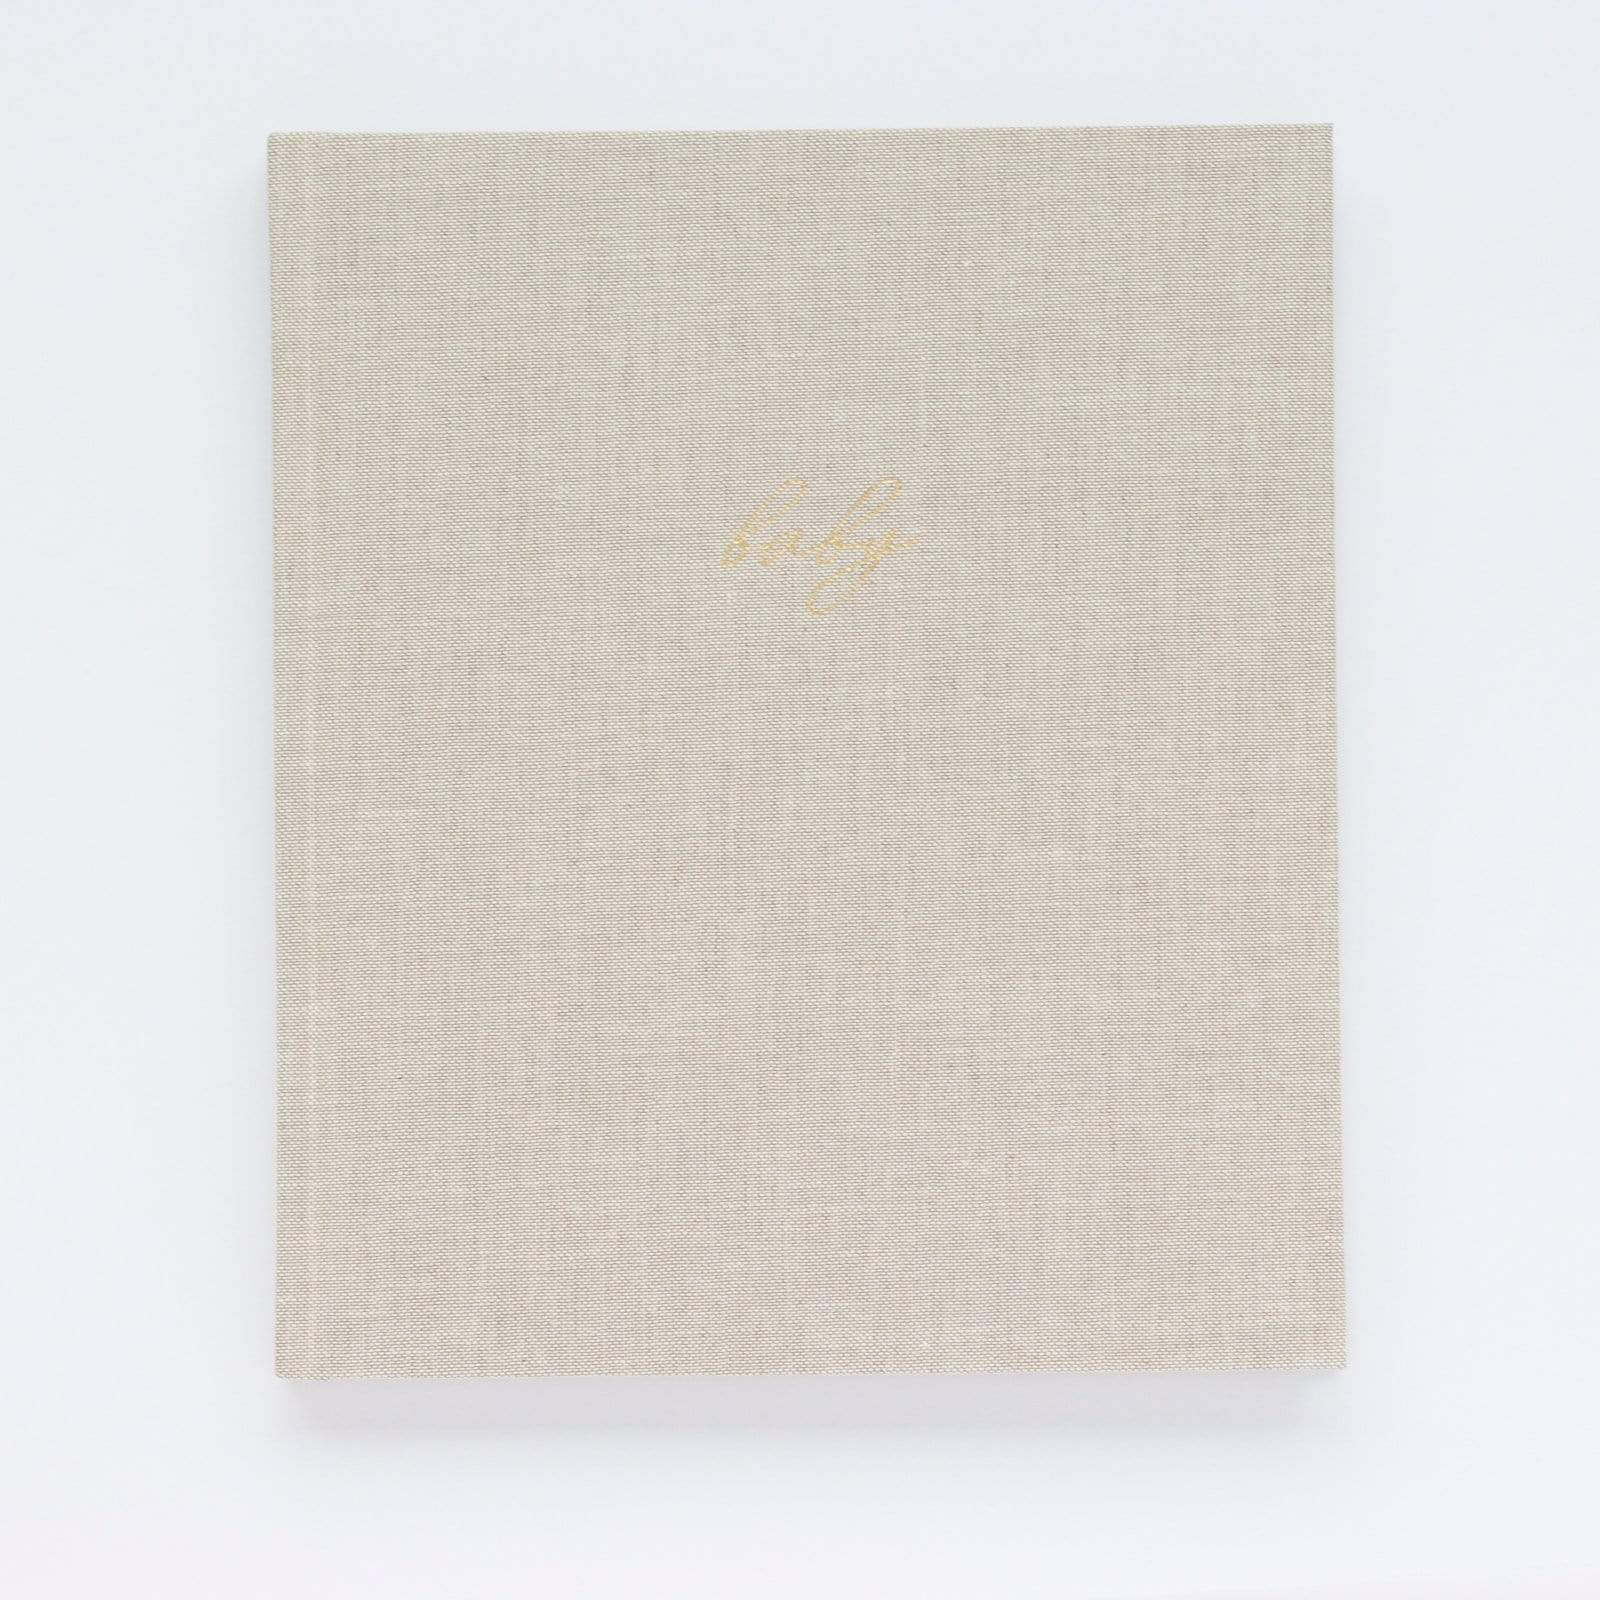 Linen Baby Book